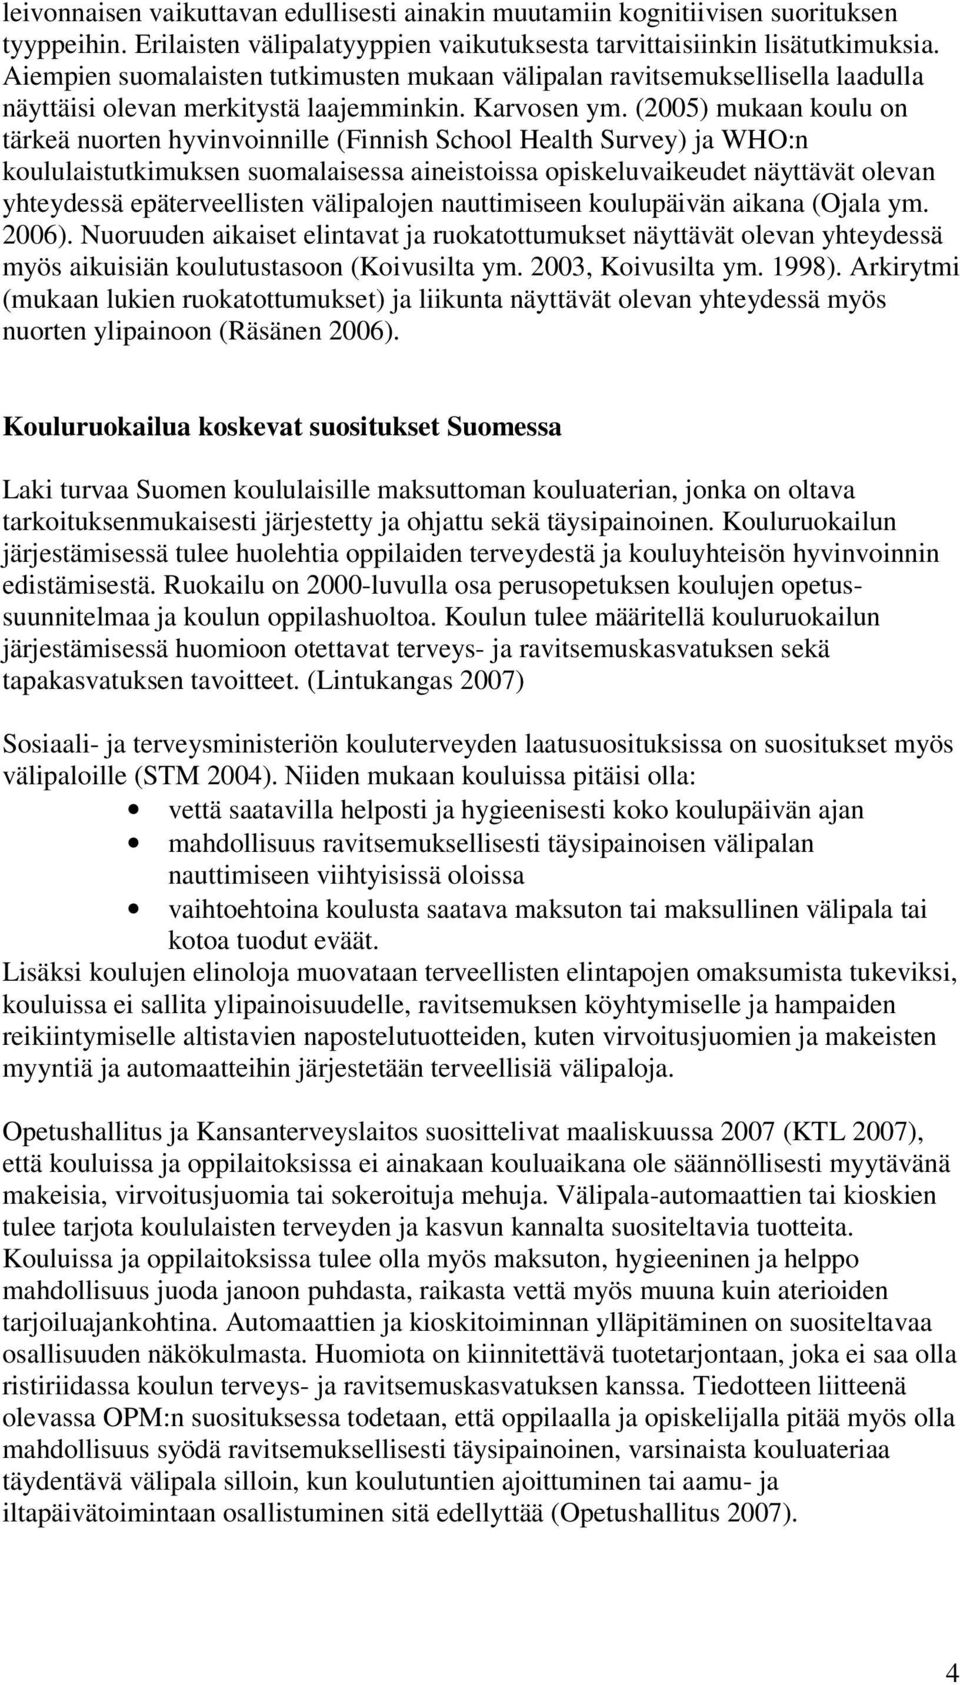 (05) mukaan koulu on tärkeä nuorten hyvinvoinnille (Finnish School Health Survey) ja WHO:n koululaistutkimuksen suomalaisessa aineistoissa opiskeluvaikeudet näyttävät olevan yhteydessä